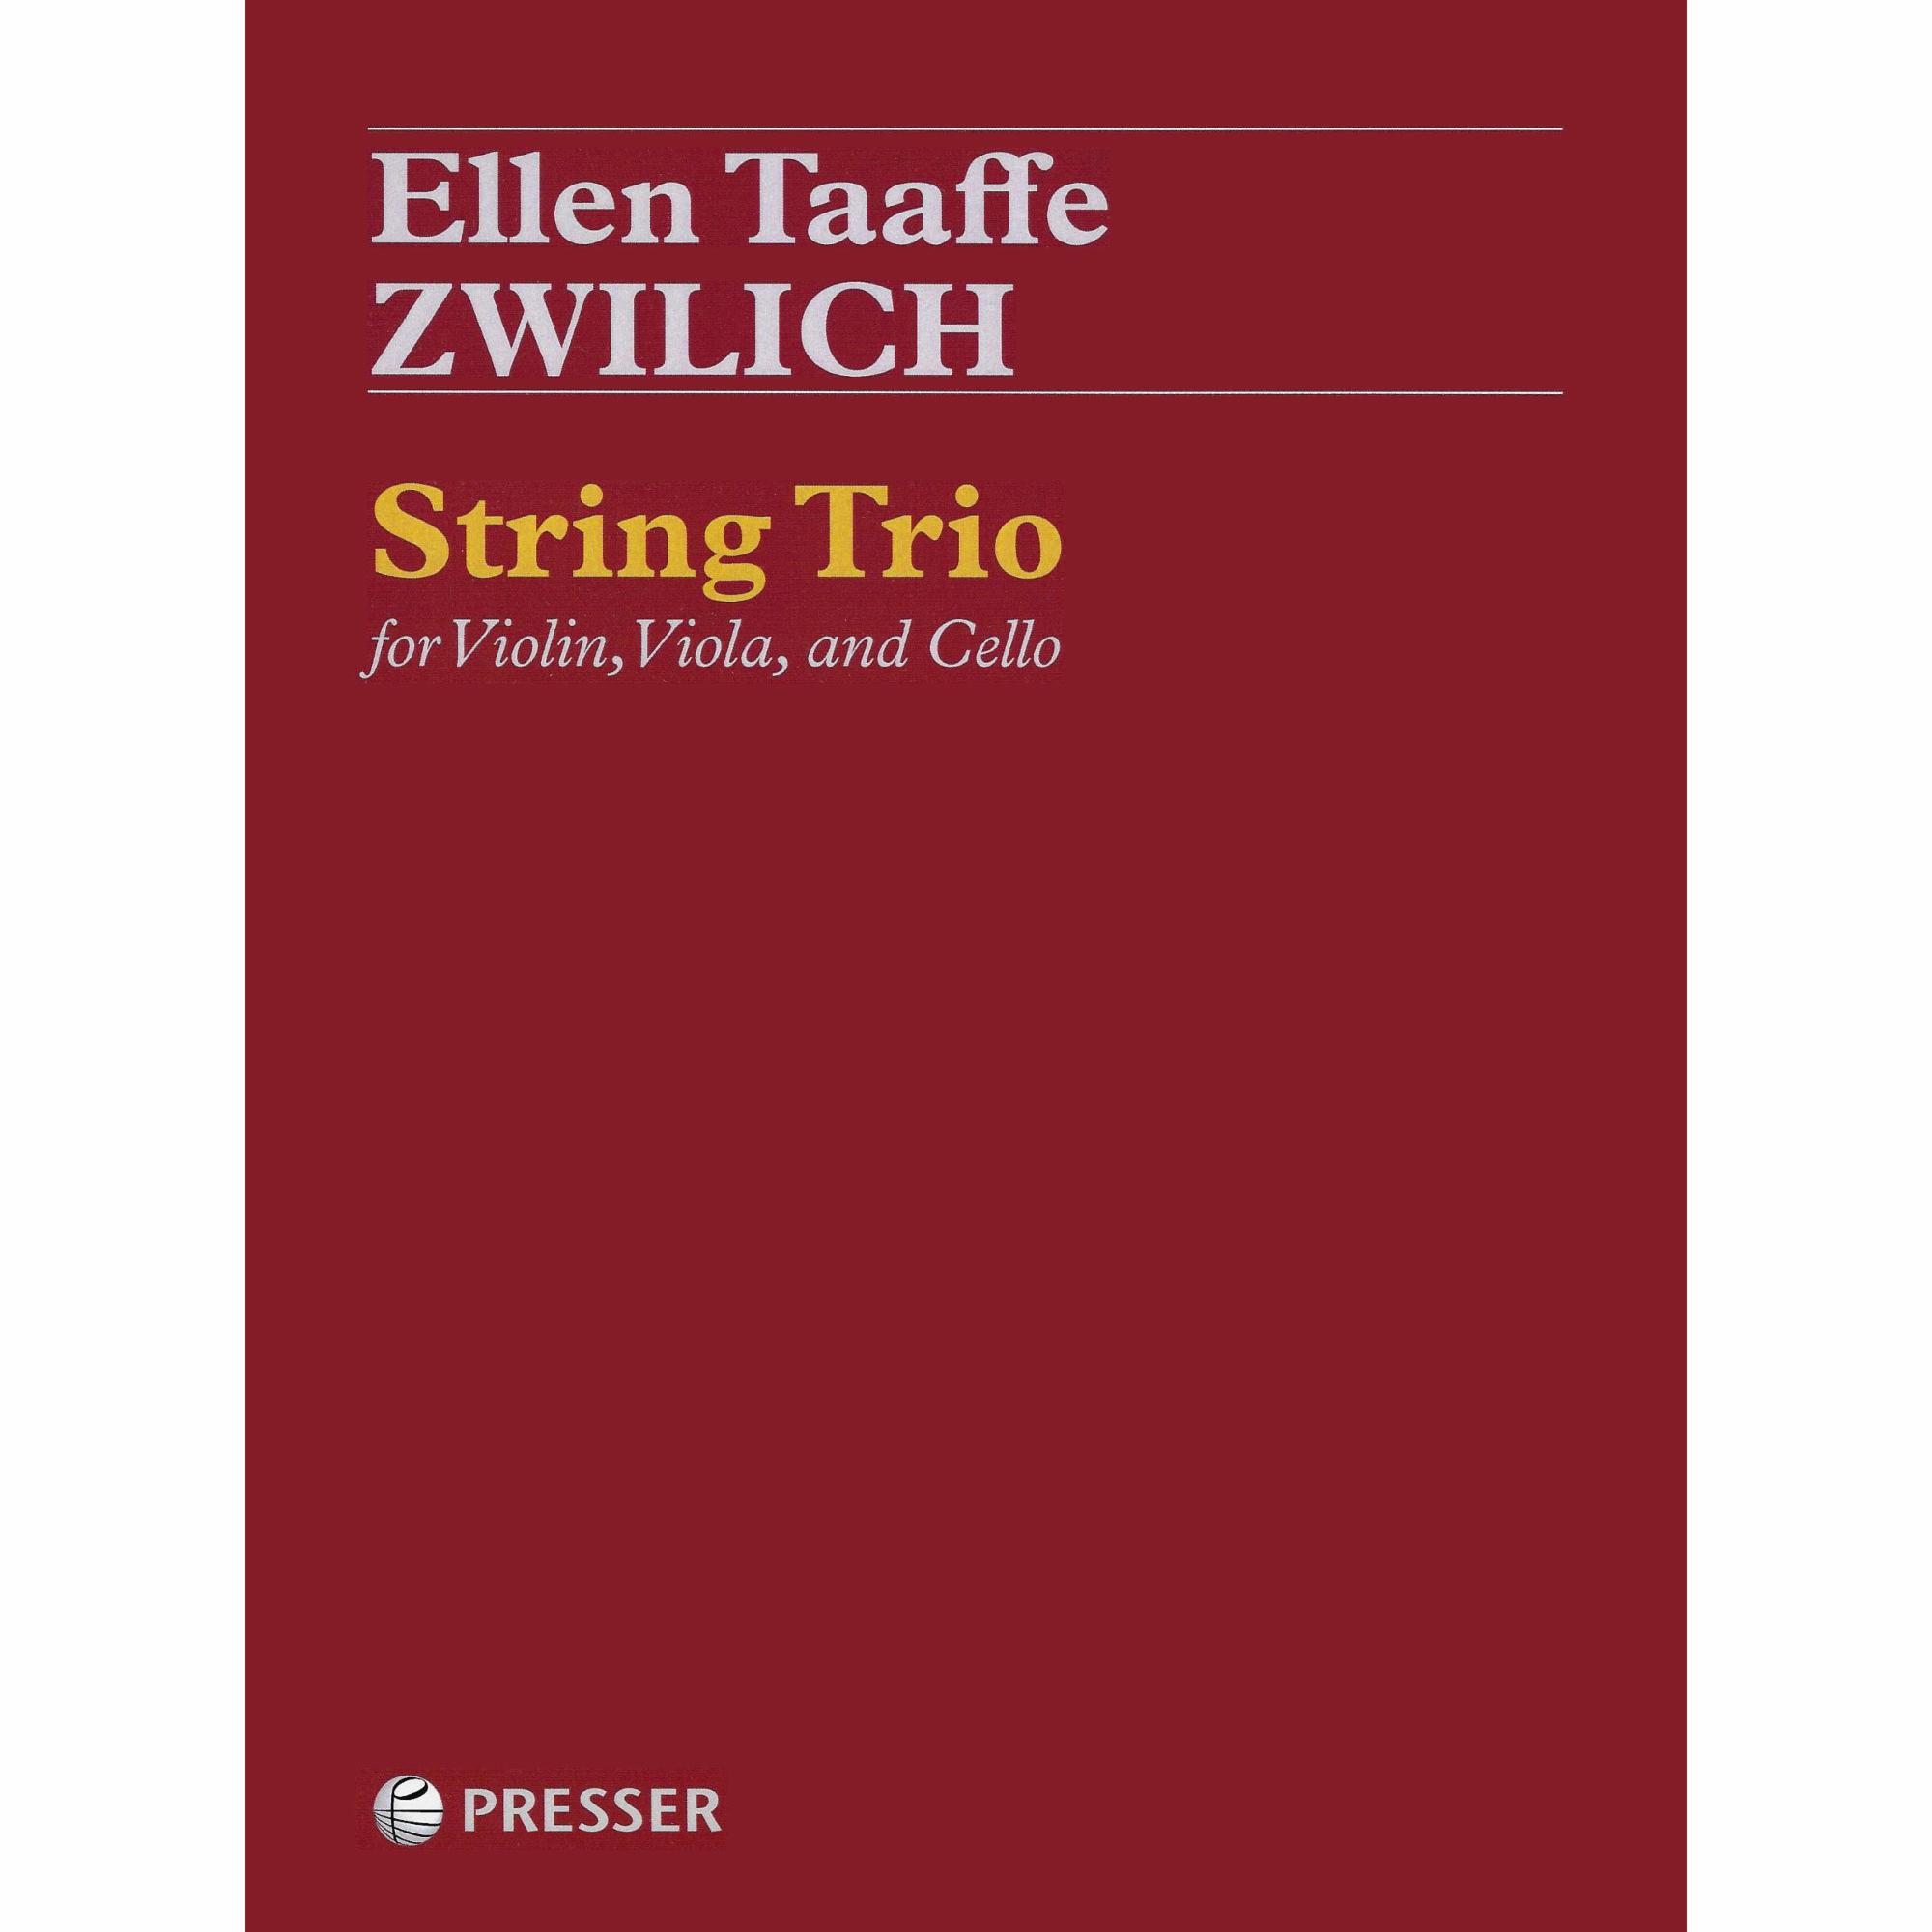 Zwilich -- String Trio for Violin, Viola, and Cello